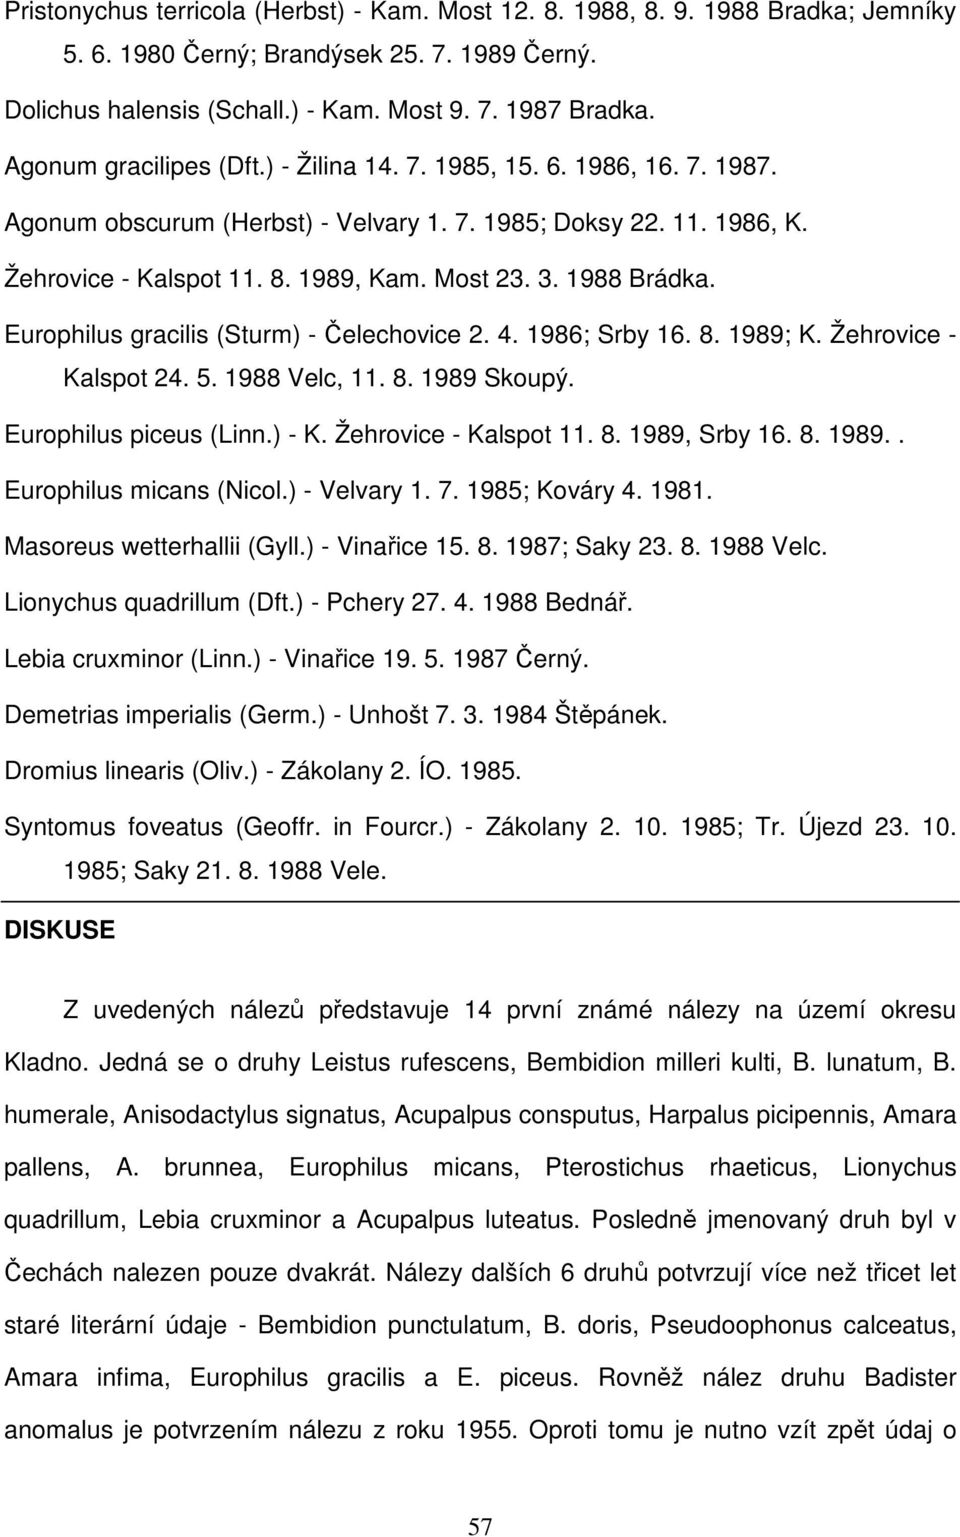 1988 Brádka. Europhilus gracilis (Sturm) - Čelechovice 2. 4. 1986; Srby 16. 8. 1989; K. Žehrovice - Kalspot 24. 5. 1988 Velc, 11. 8. 1989 Skoupý. Europhilus piceus (Linn.) - K. Žehrovice - Kalspot 11.